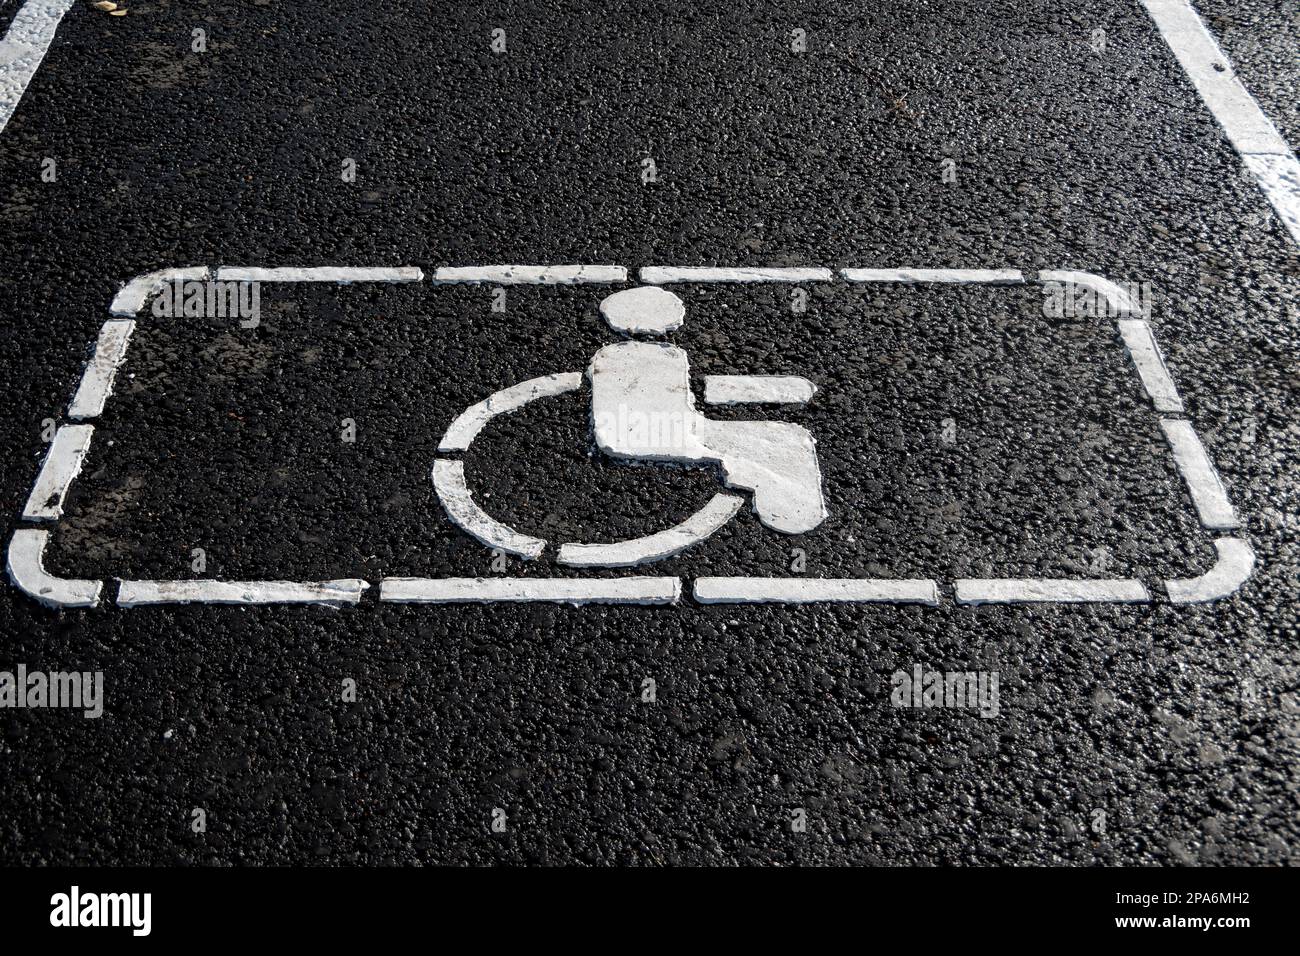 Behindertensymbol auf der Straße. Straßenmarkierung auf Asphalt mit Behindertenparkplätzen. Rollstuhl-Symbol für Behindertenparkplatz für Behinderte Stockfoto